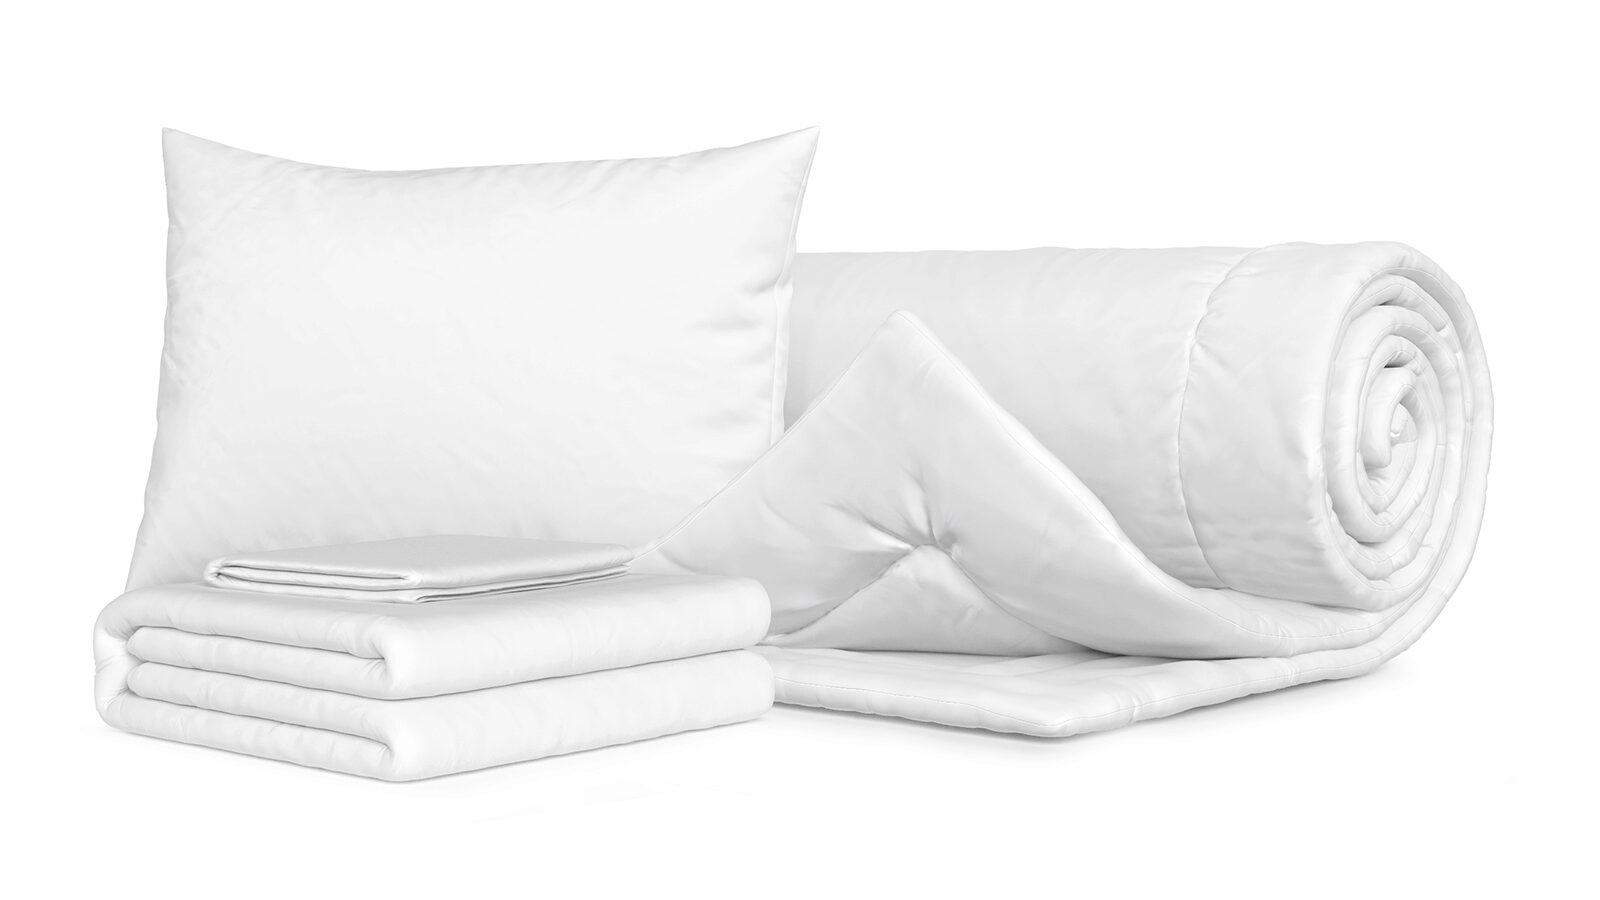 Комплект Одеяло Beat + Подушка Sky + Комплект постельного белья Comfort Cotton, цвет: Белый комплект посудосушителей с поддоном для шкафа 60 см 56 5×25 6 см белый